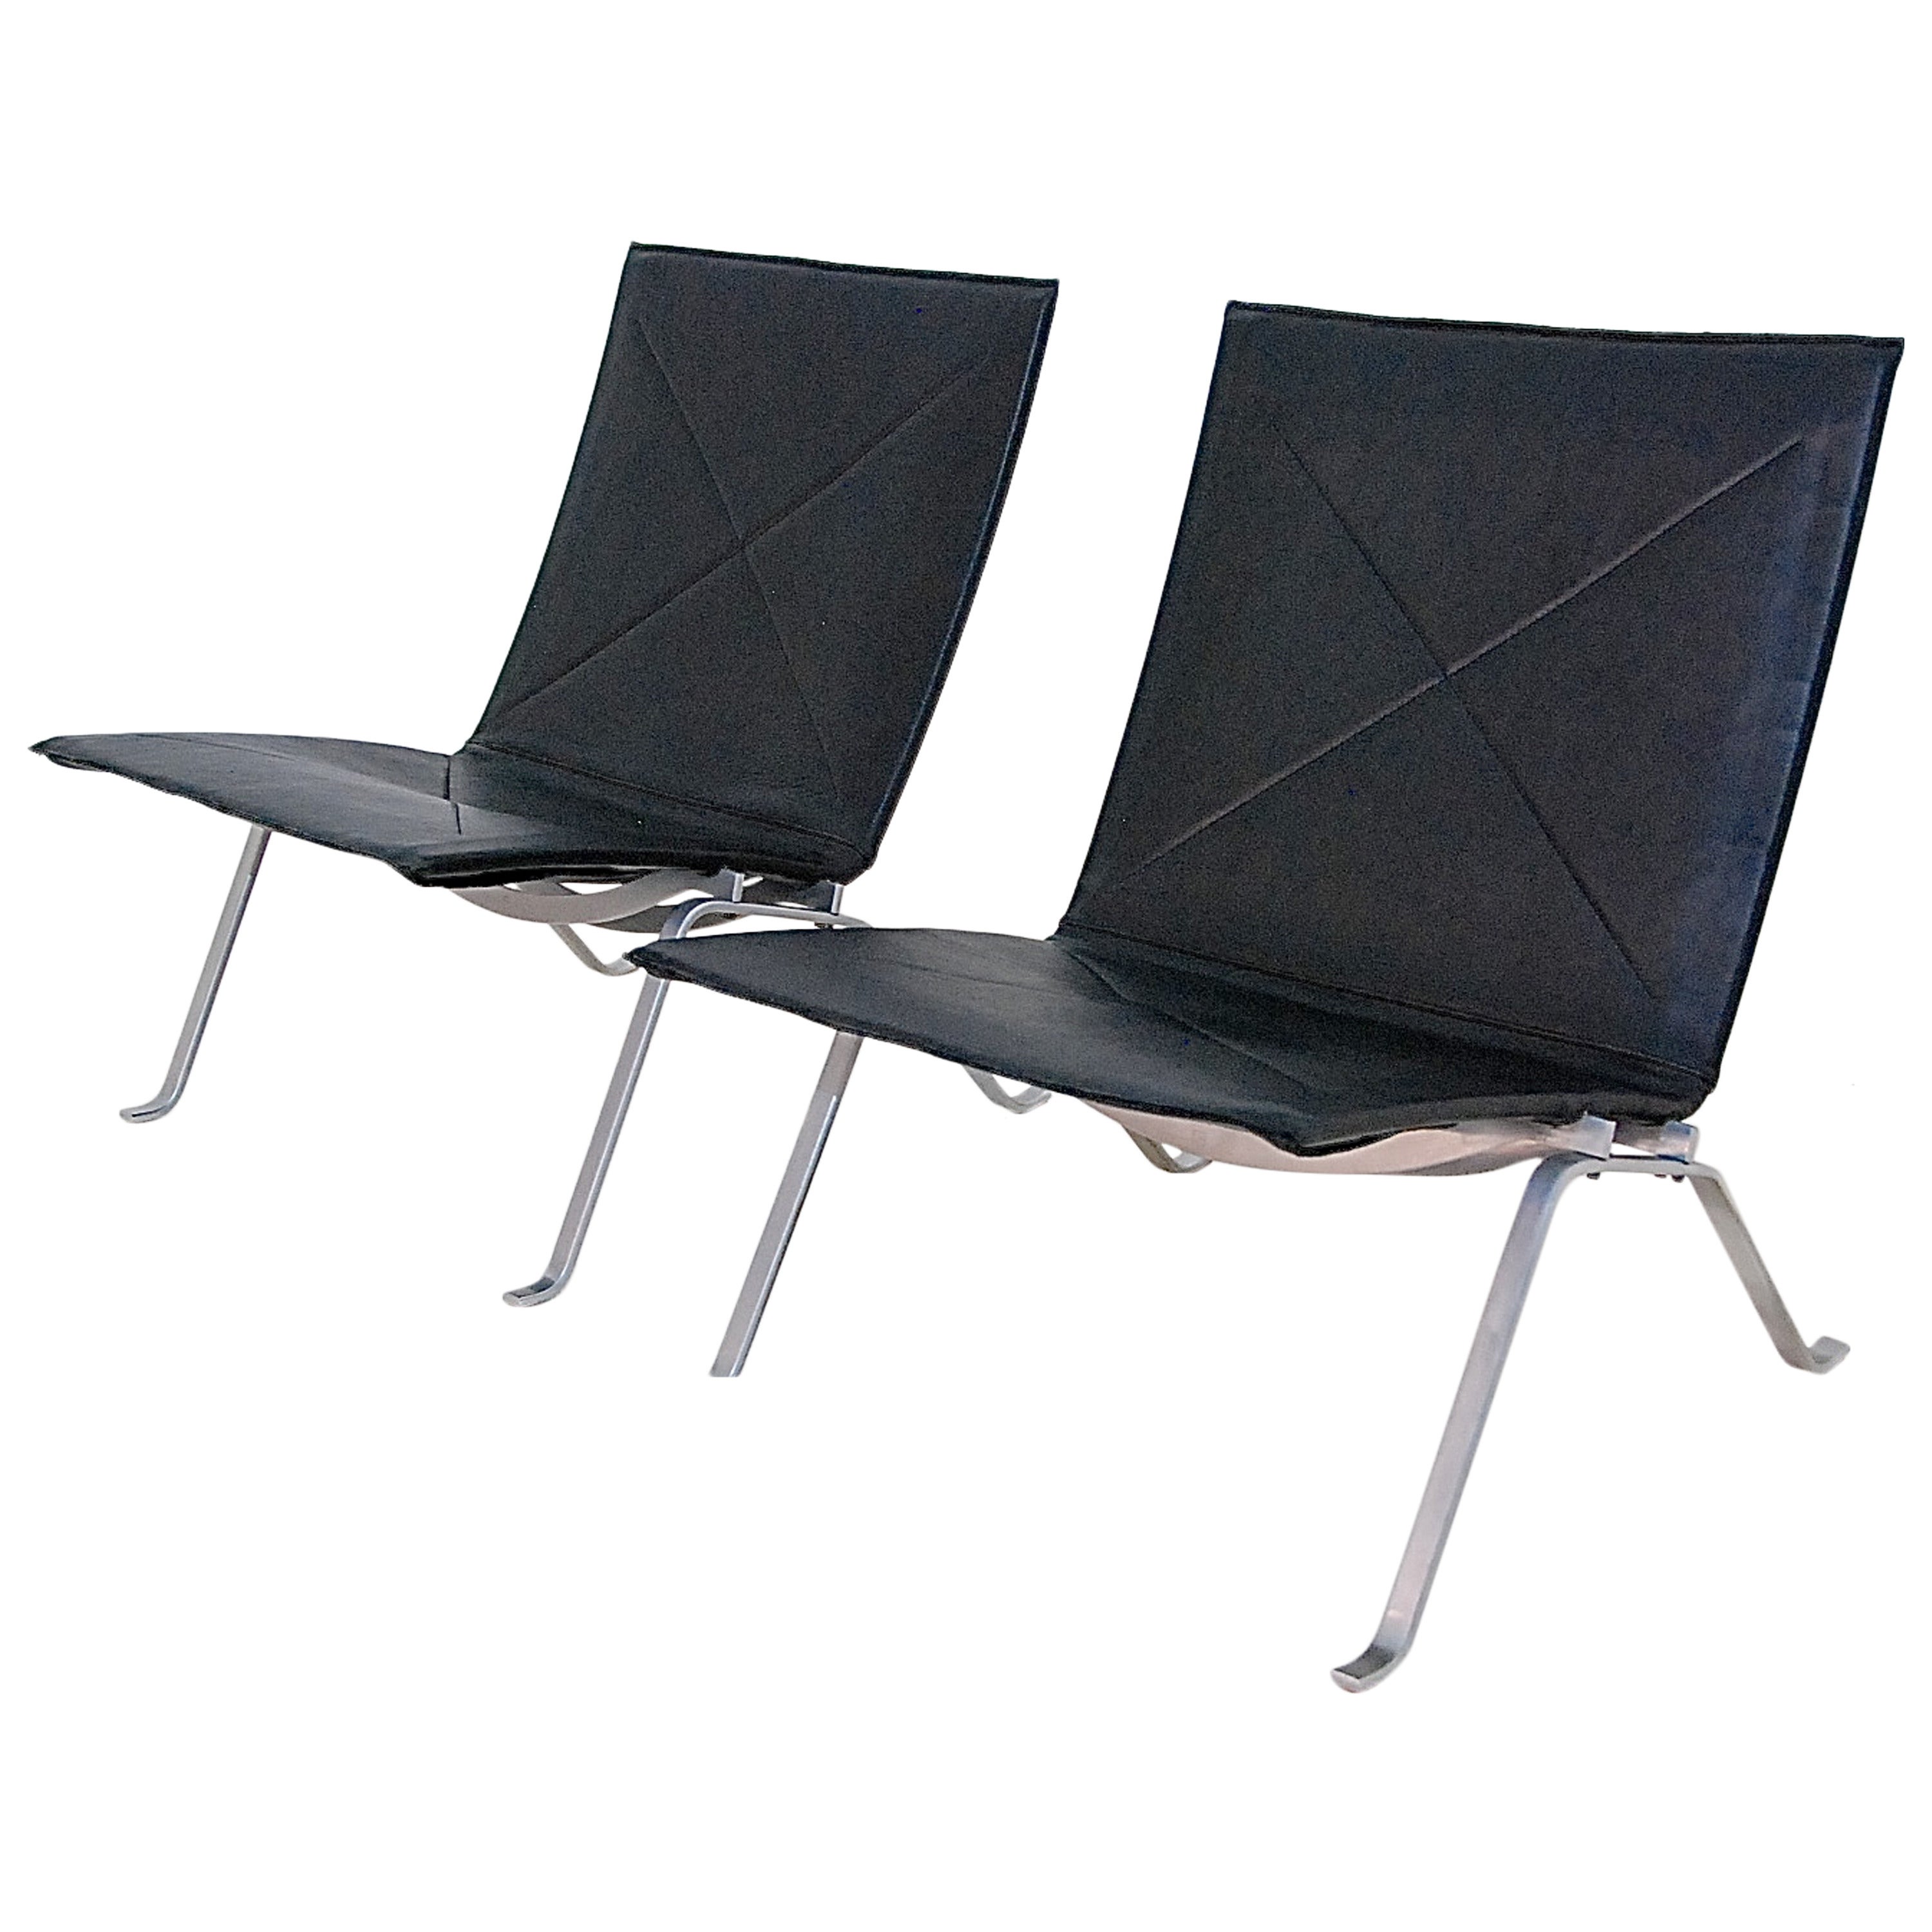 Pair of Poul kjaerholm PK22 Lounge Chairs